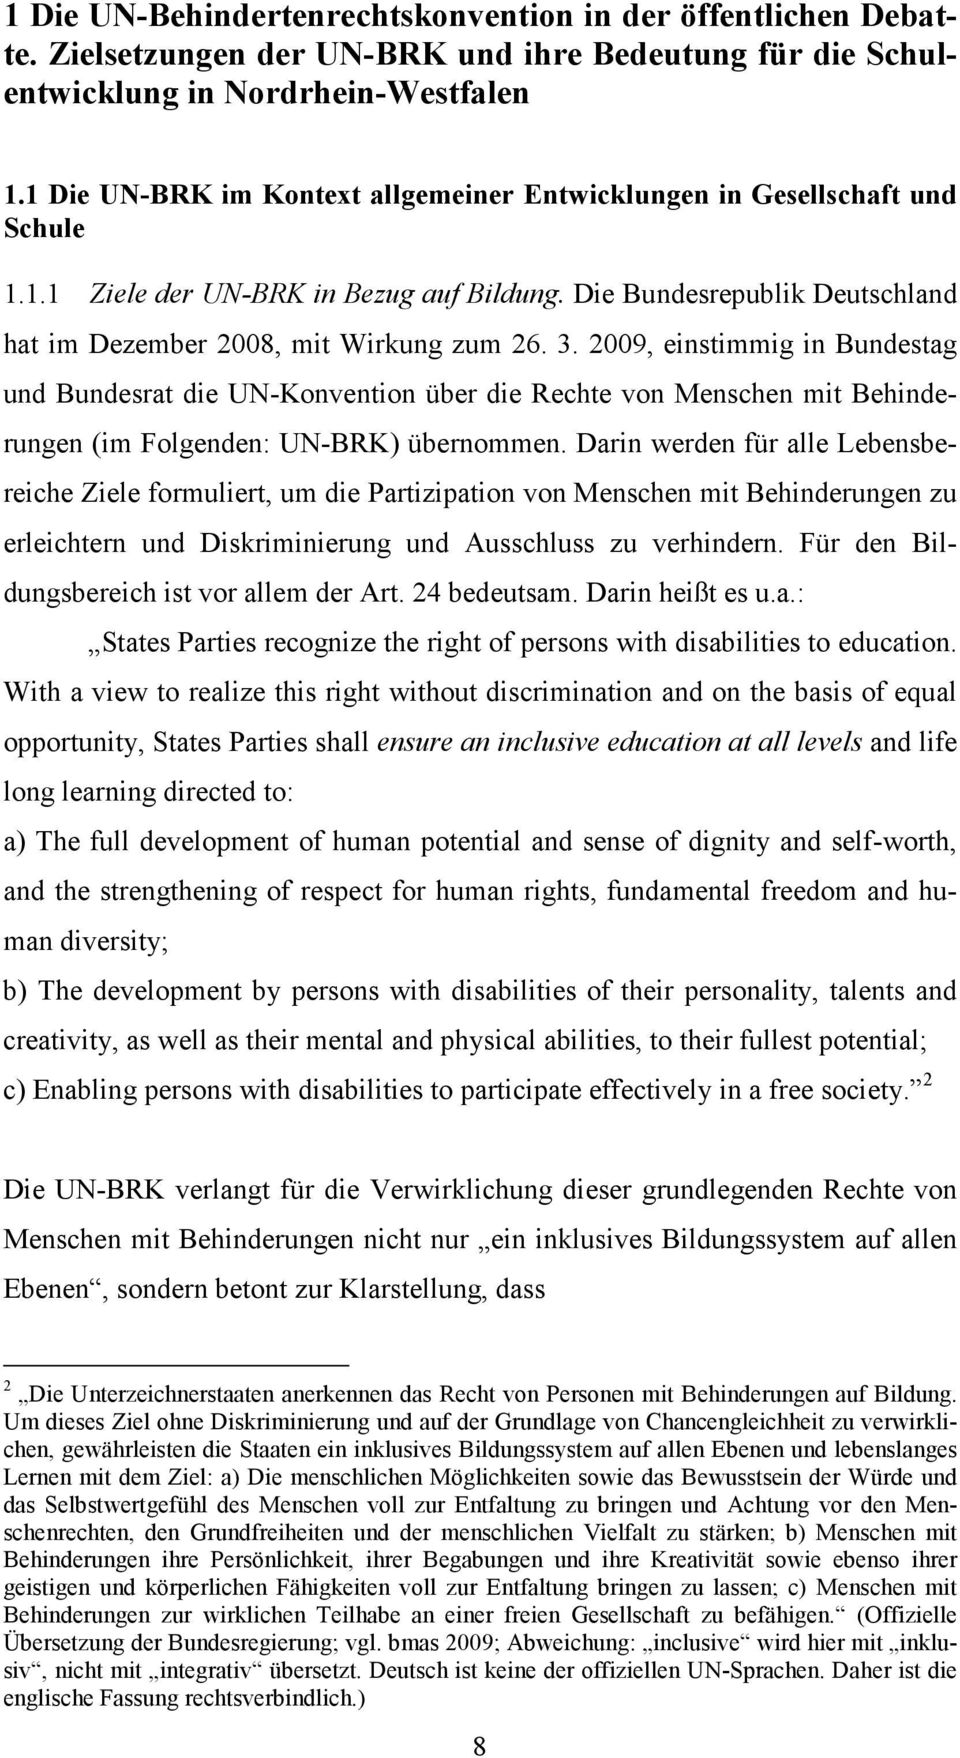 2009, einstimmig in Bundestag und Bundesrat die UN-Konvention über die Rechte von Menschen mit Behinderungen (im Folgenden: UN-BRK) übernommen.